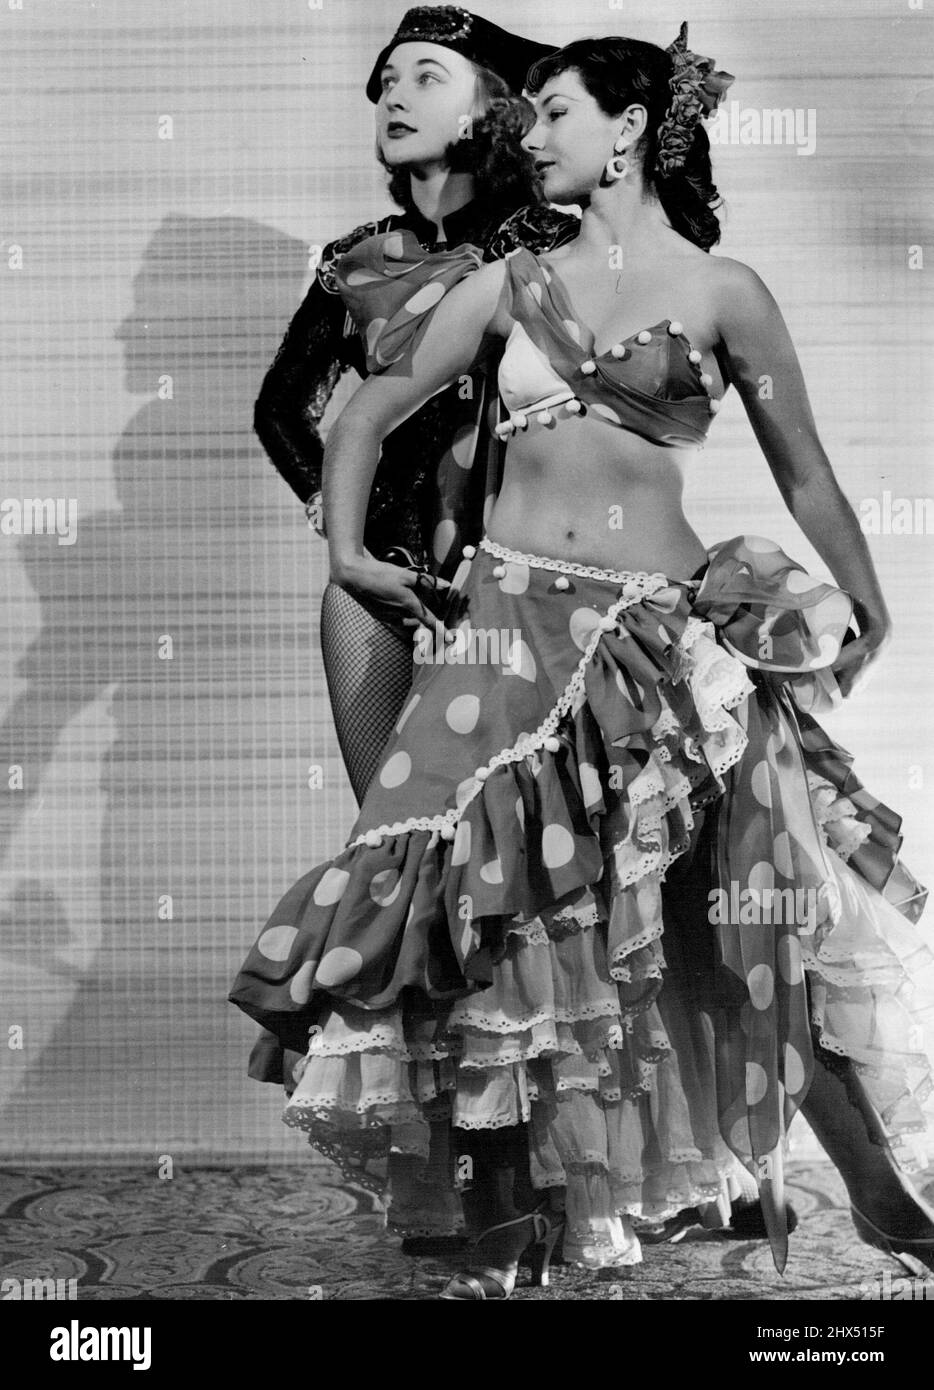 Fiäre Sapnish-Tänzer in Madrid? Sie sehen authentisch aus, aber es sind die Kabarettisten Valery Cooney (Sängerin) aus Sydney und Monica Scott (Tänzerin), die ihre spanische Nummer machen. 19. Juli 1954. Stockfoto